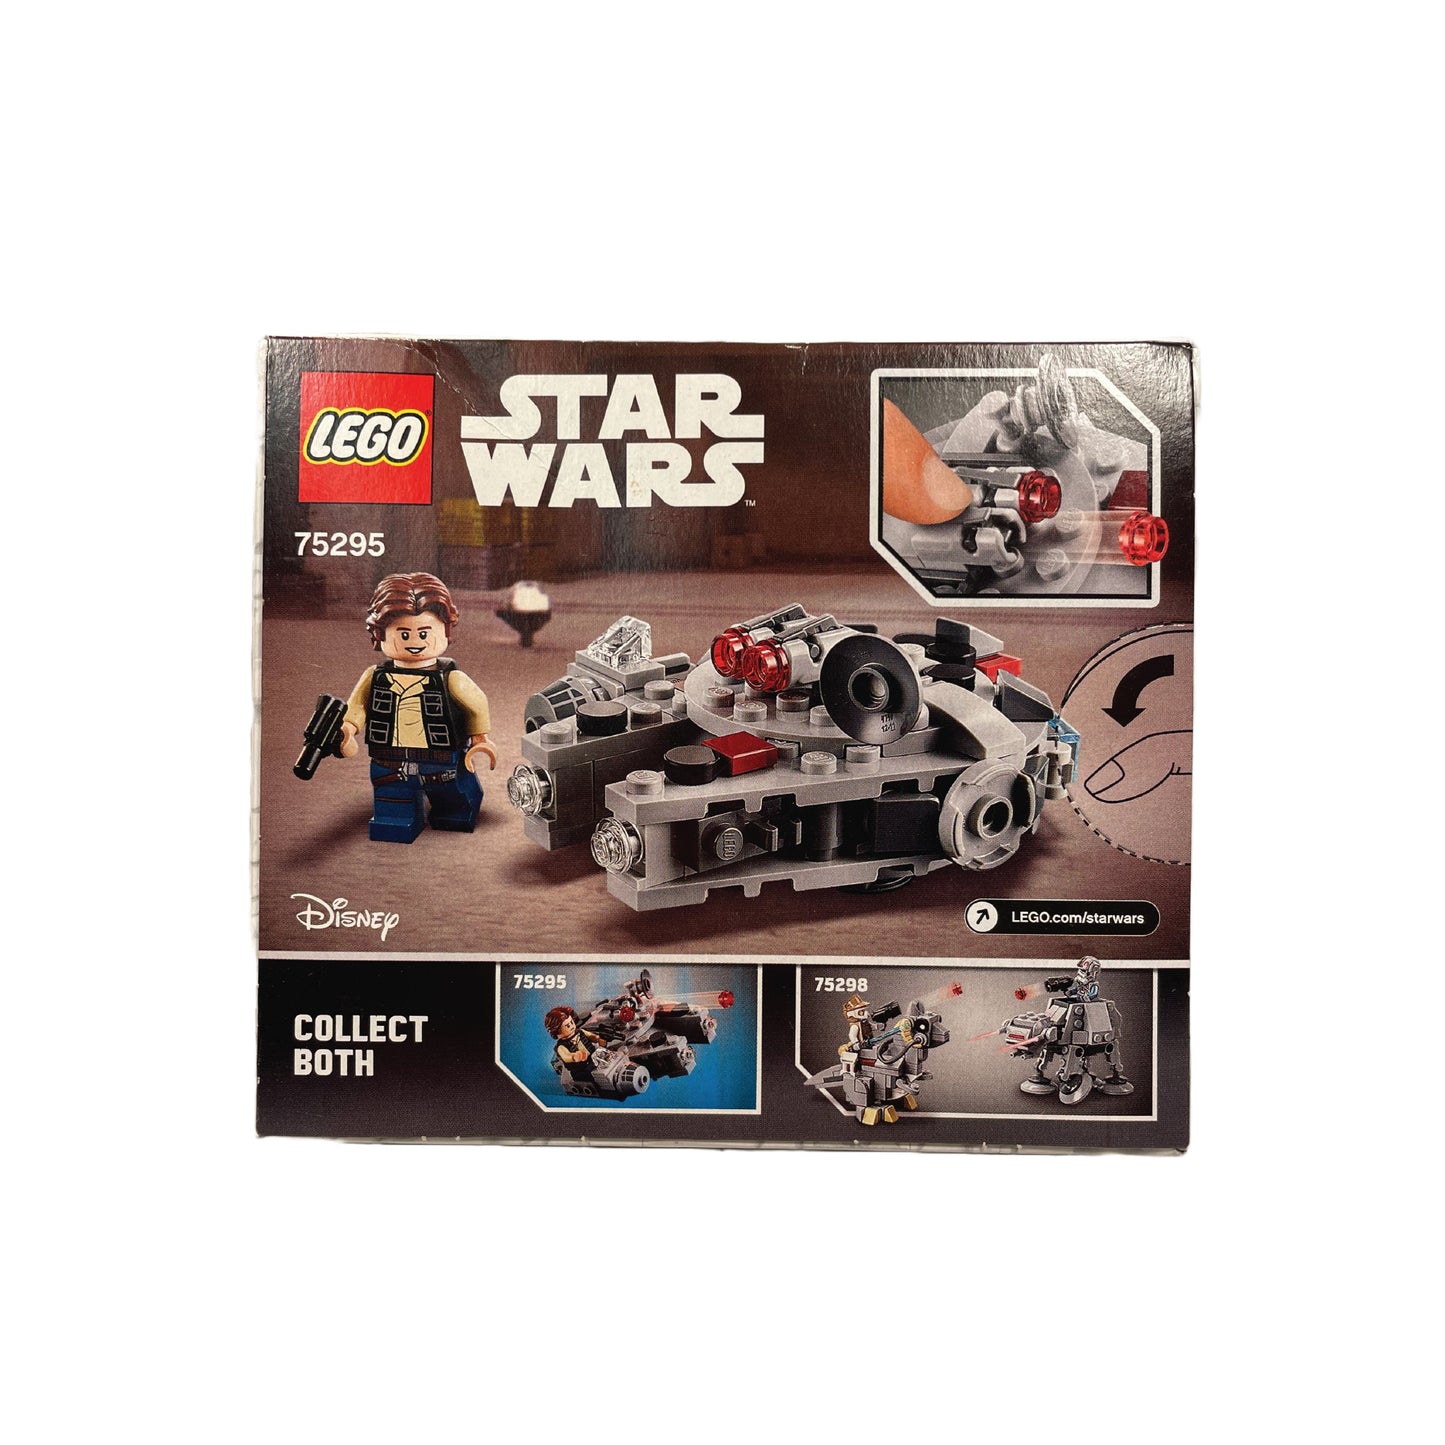 LEGO Starwars 75295 - Microfighter Faucon Millenium